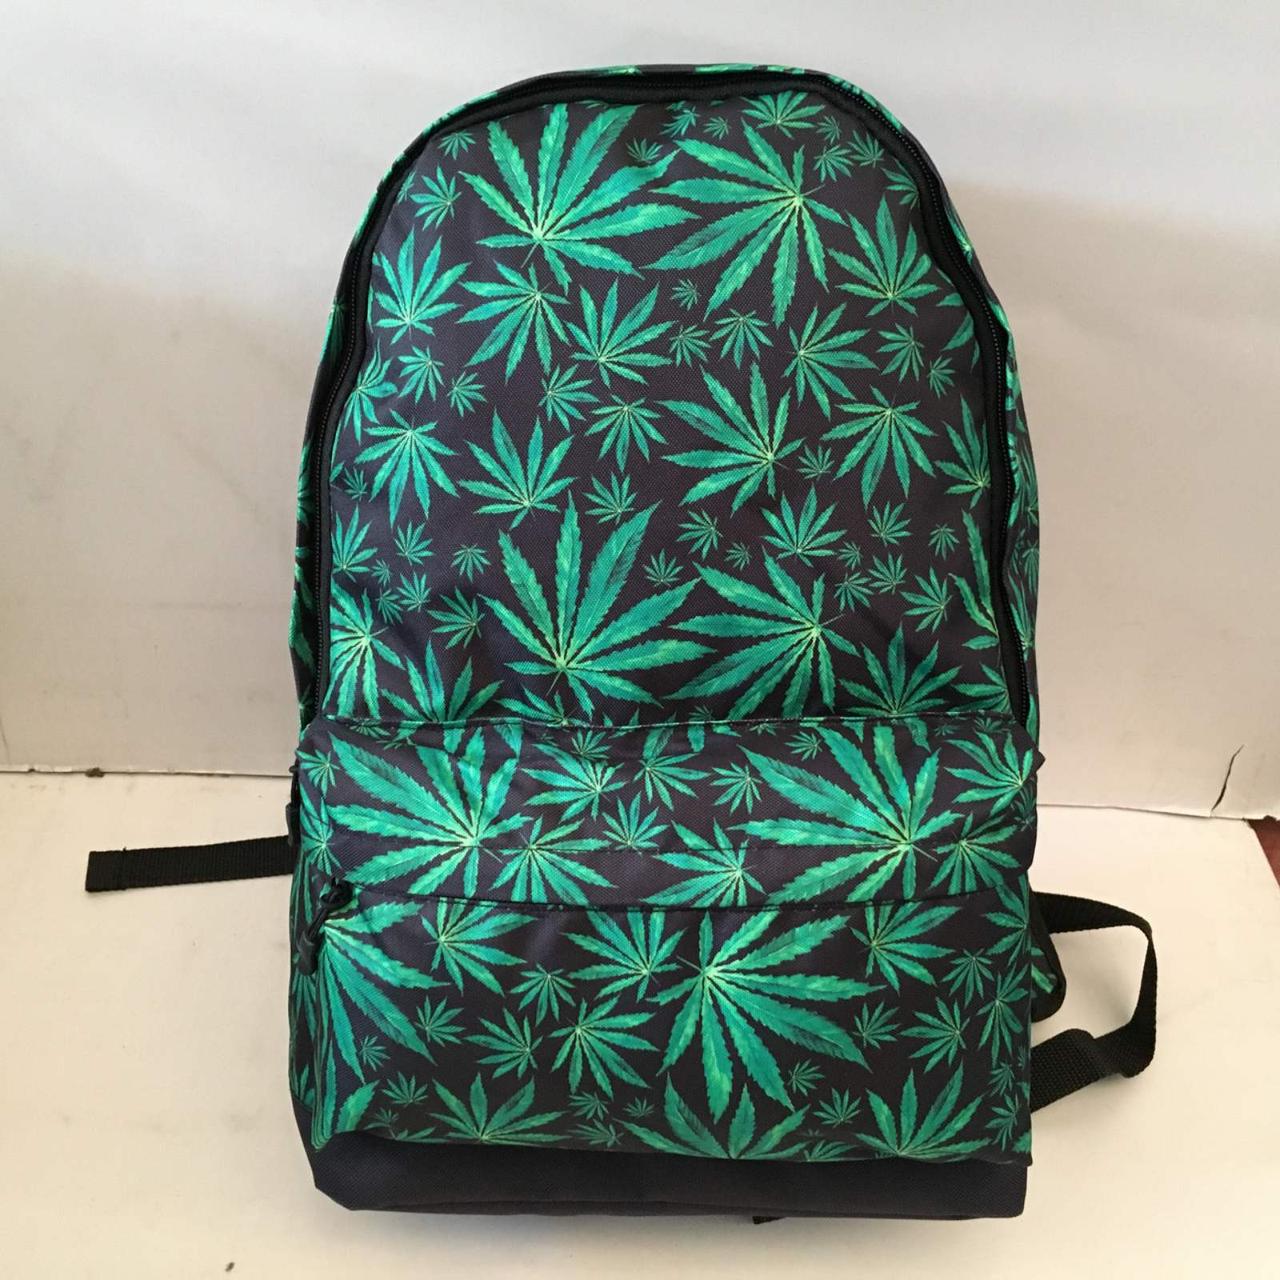 Рюкзак с коноплей фото 2 типа марихуаны